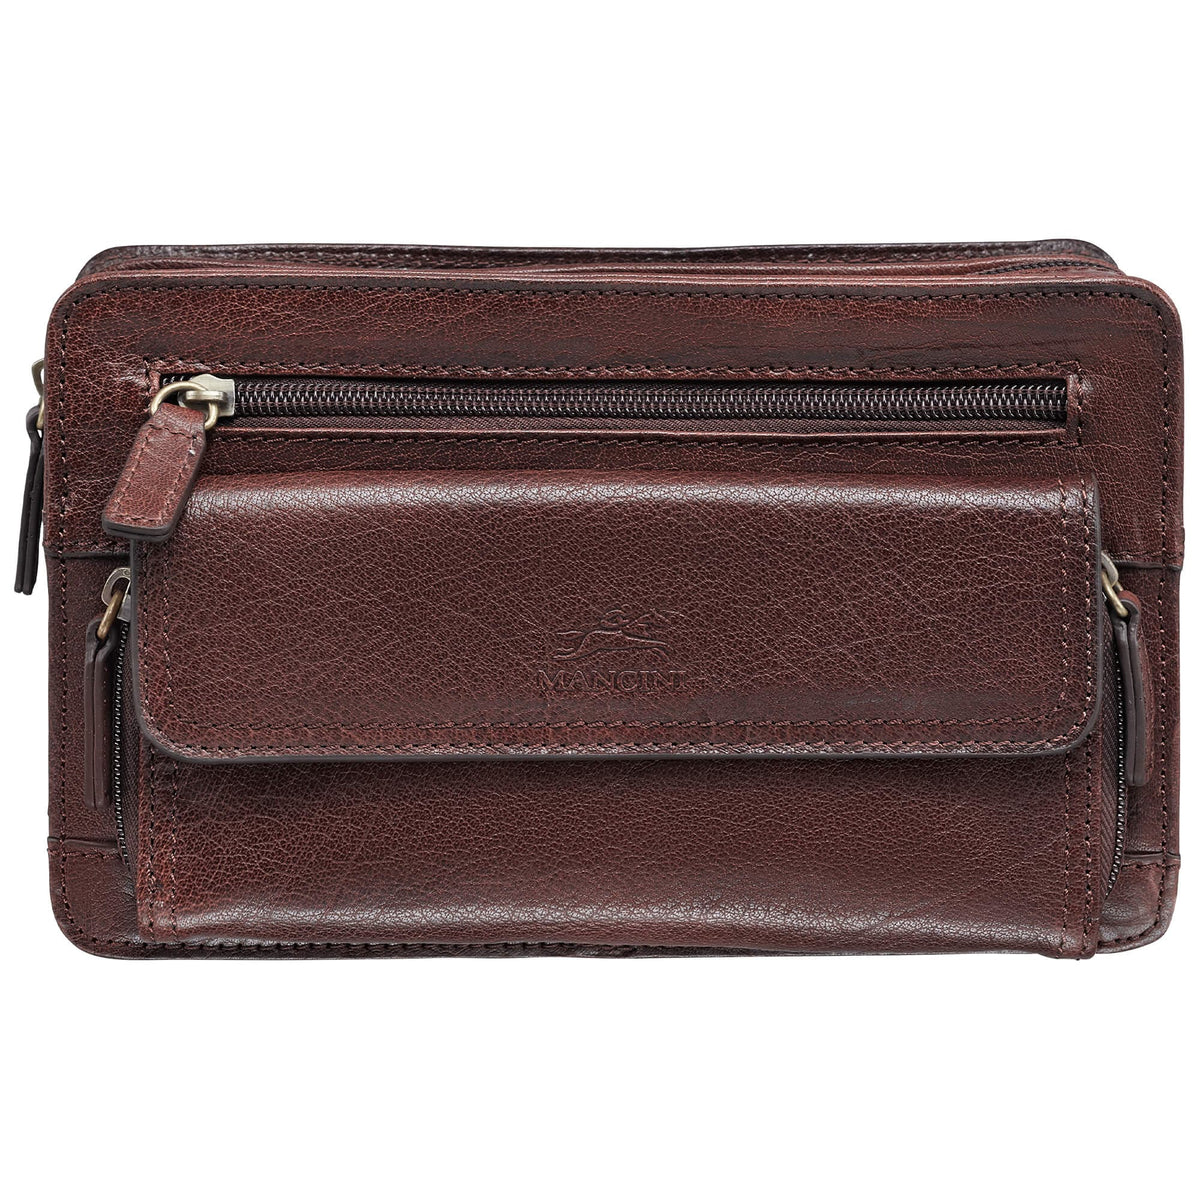 Mancini Unisex Bag with Zippered Organizer Pocket